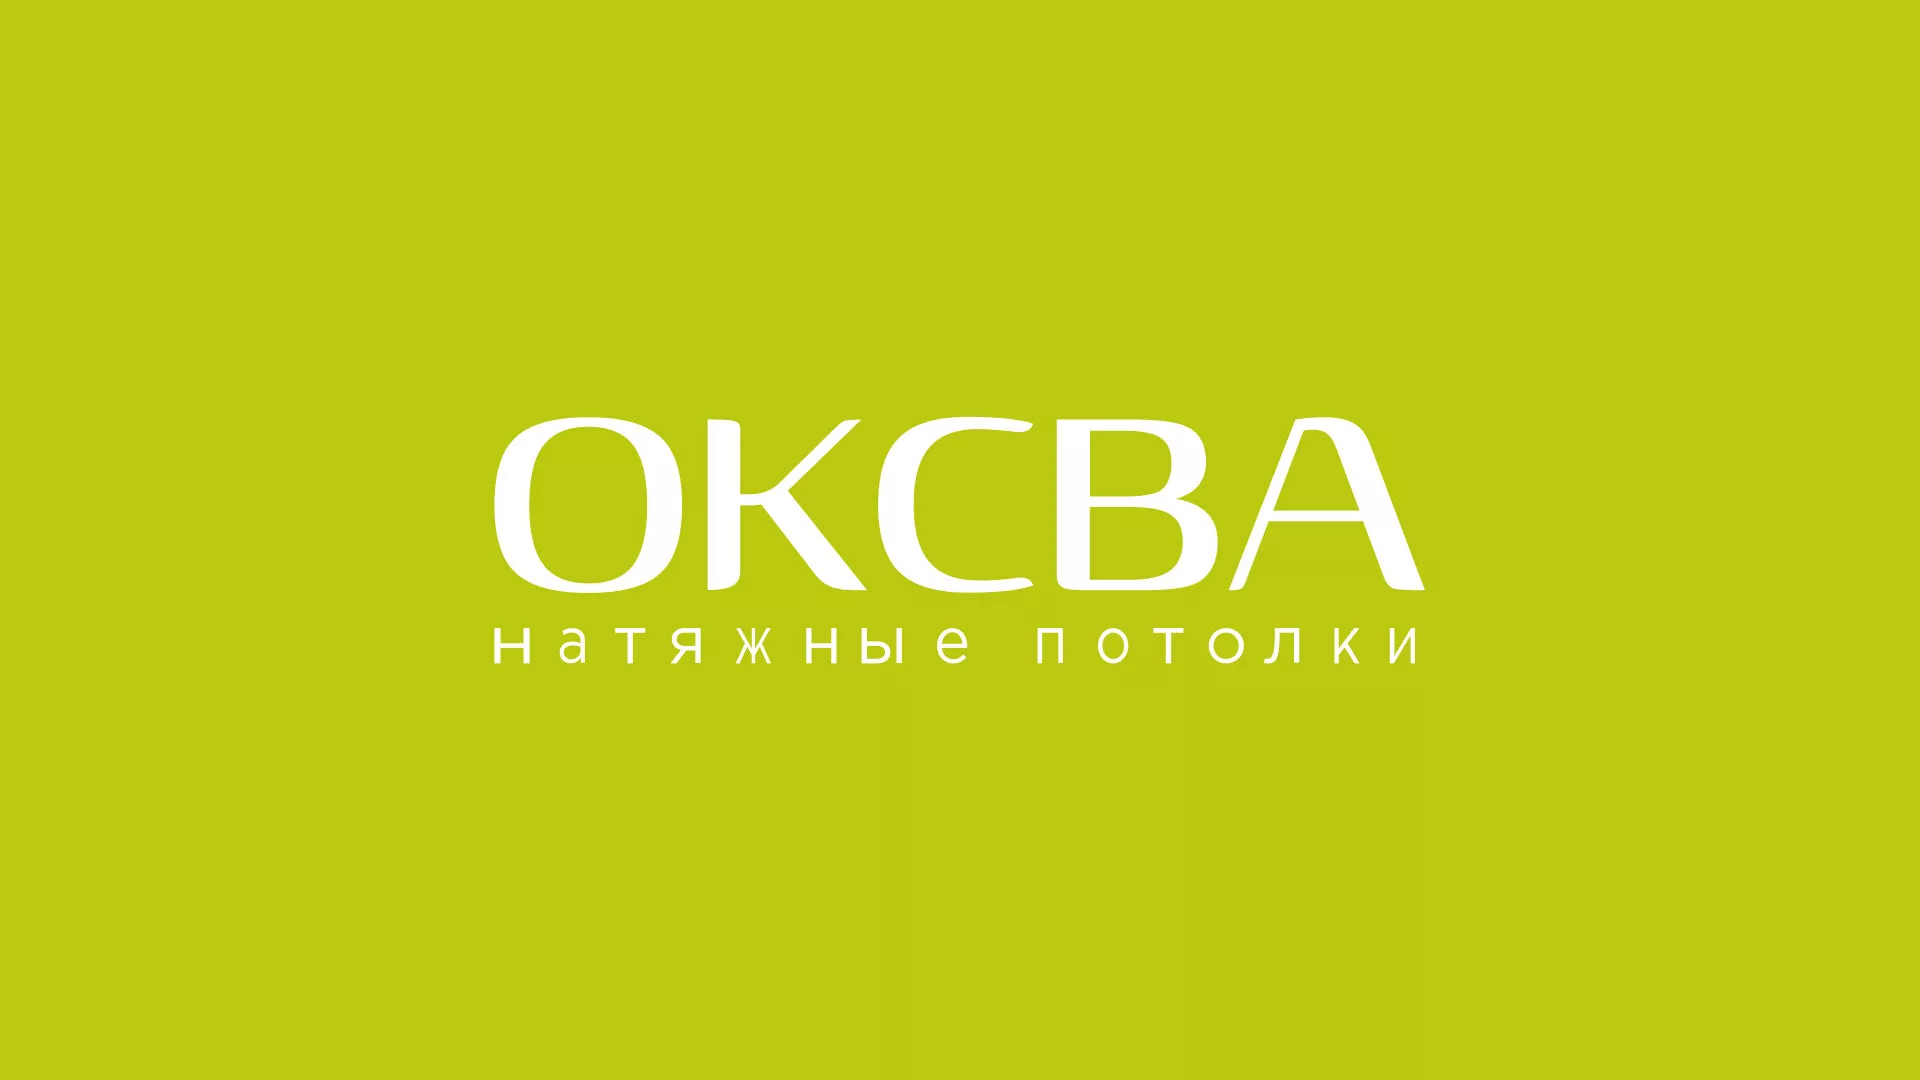 Создание сайта по продаже натяжных потолков для компании «ОКСВА» в Юрьев-Польском